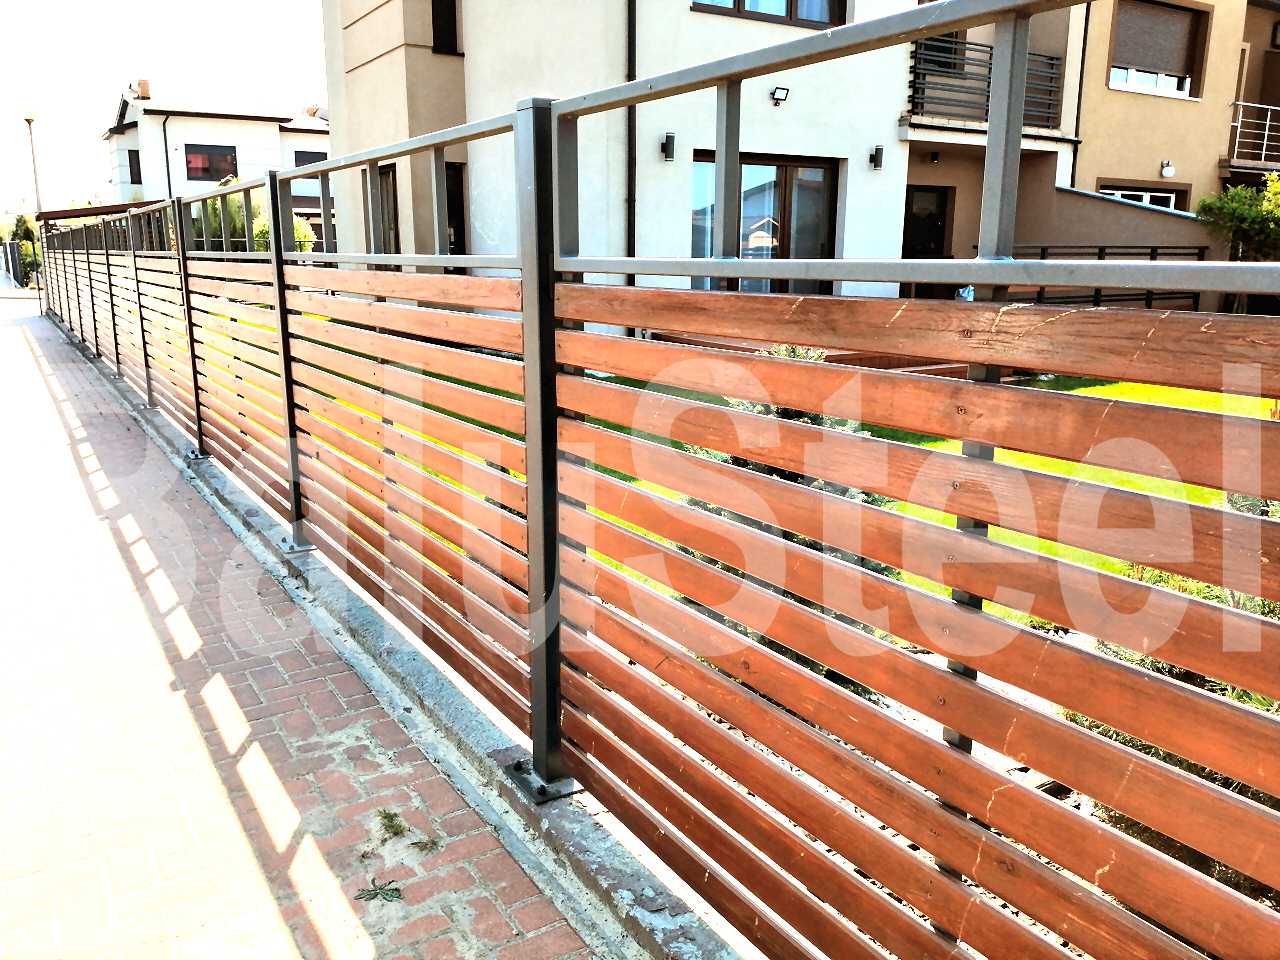 Ogrodzenia ogrodzenie plot fence nowoczesne ogrodzenie ogrodzenie panelowe ogrodzenie aluminiowe ogrodzenie alu brama furtka brama przesuwna deska kompozyt